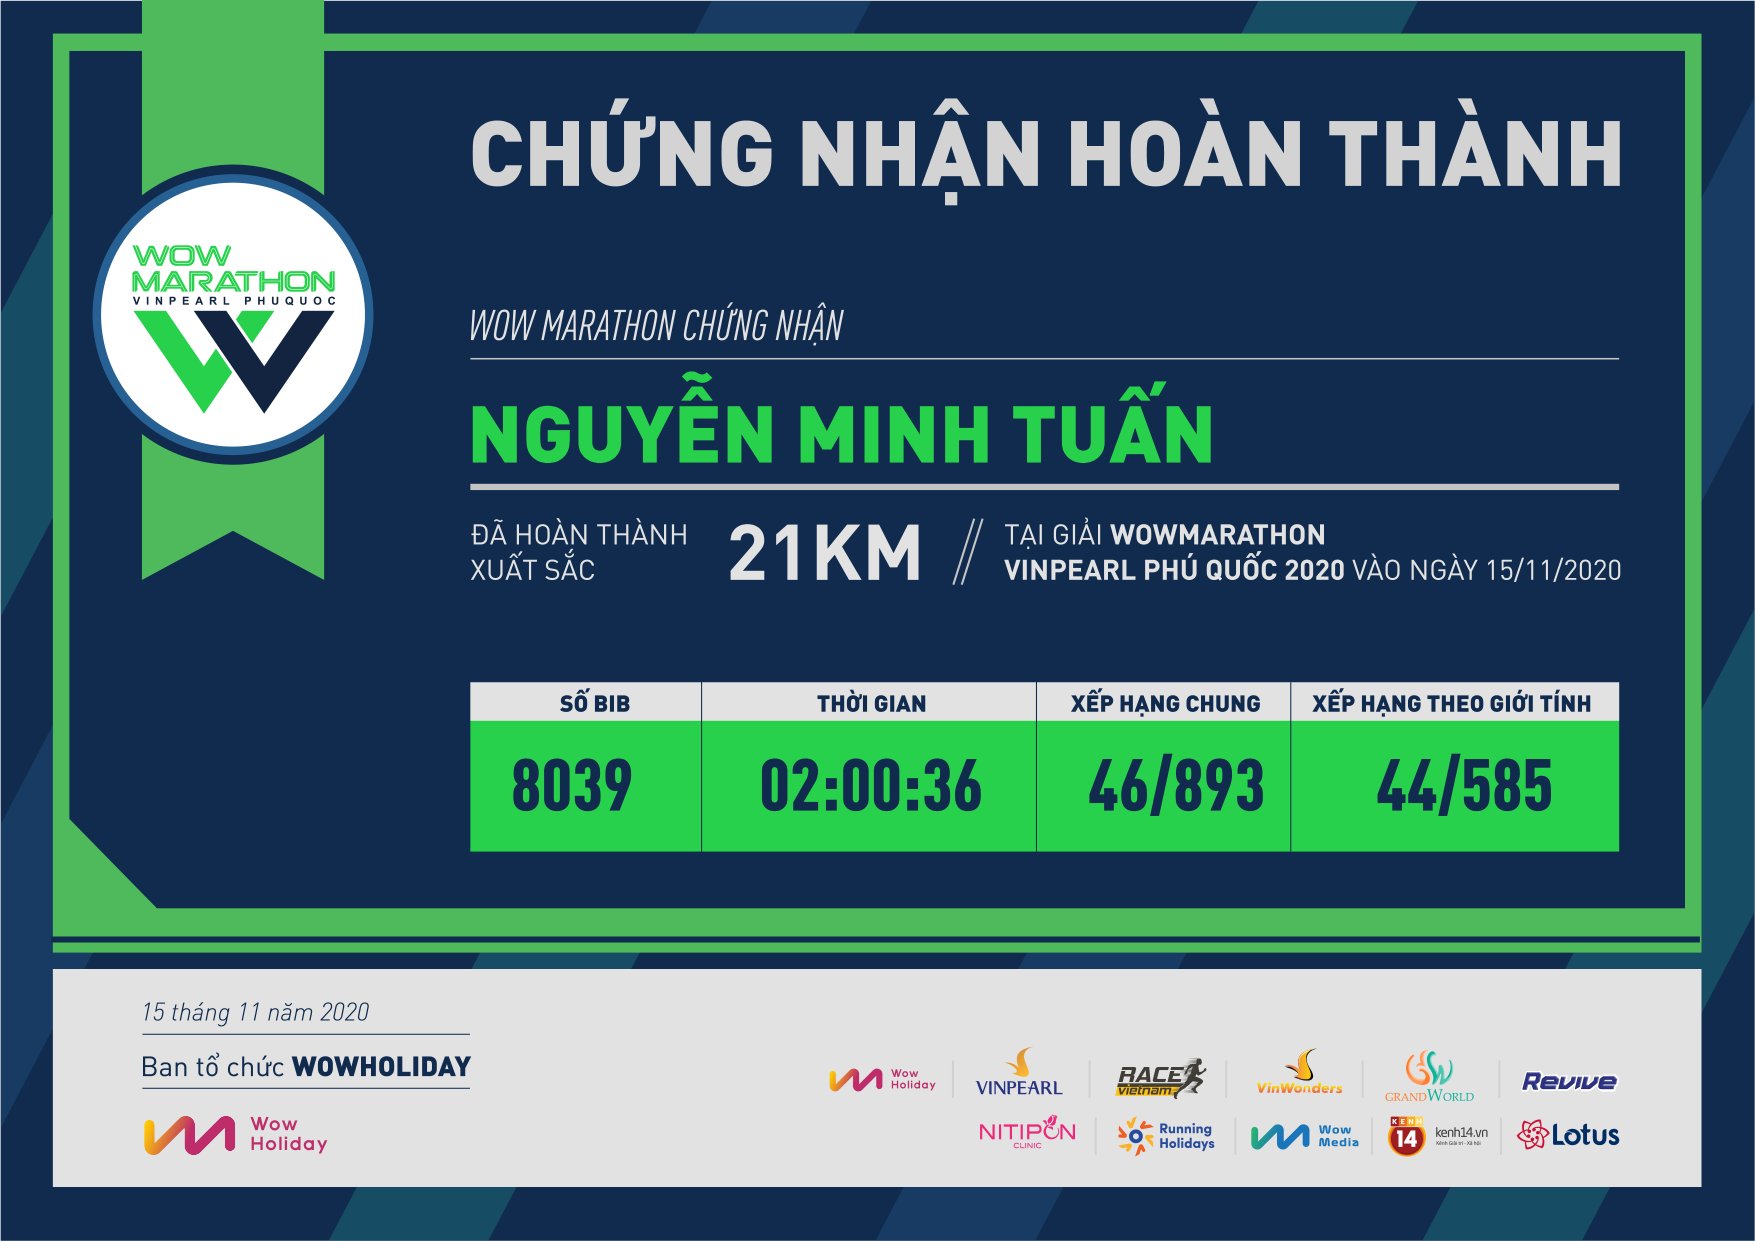 8039 - Nguyễn Minh Tuấn